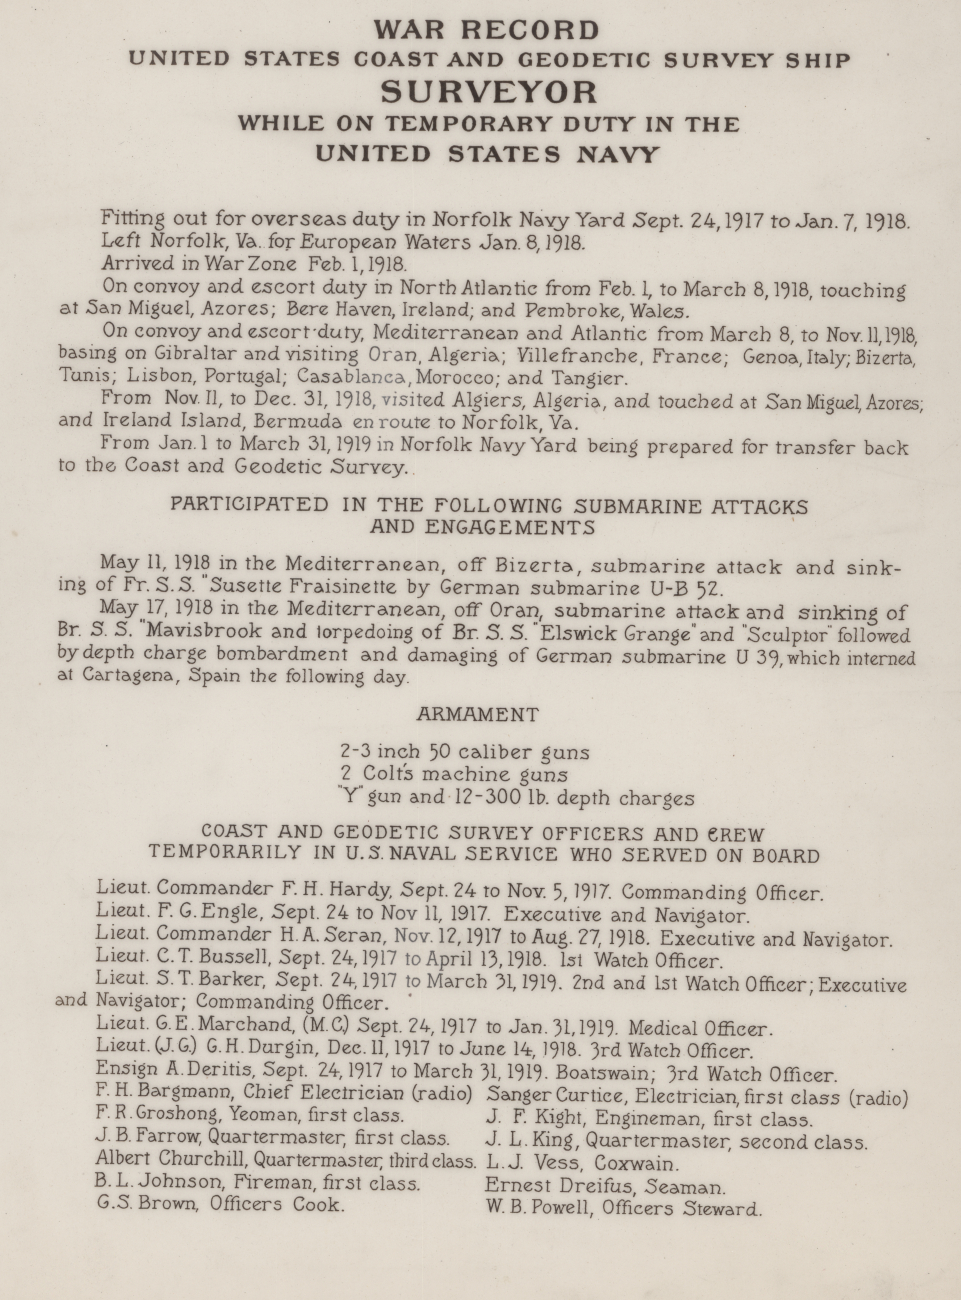 World War I record of the United States Coast and Geodetic Survey ShipSURVEYOR